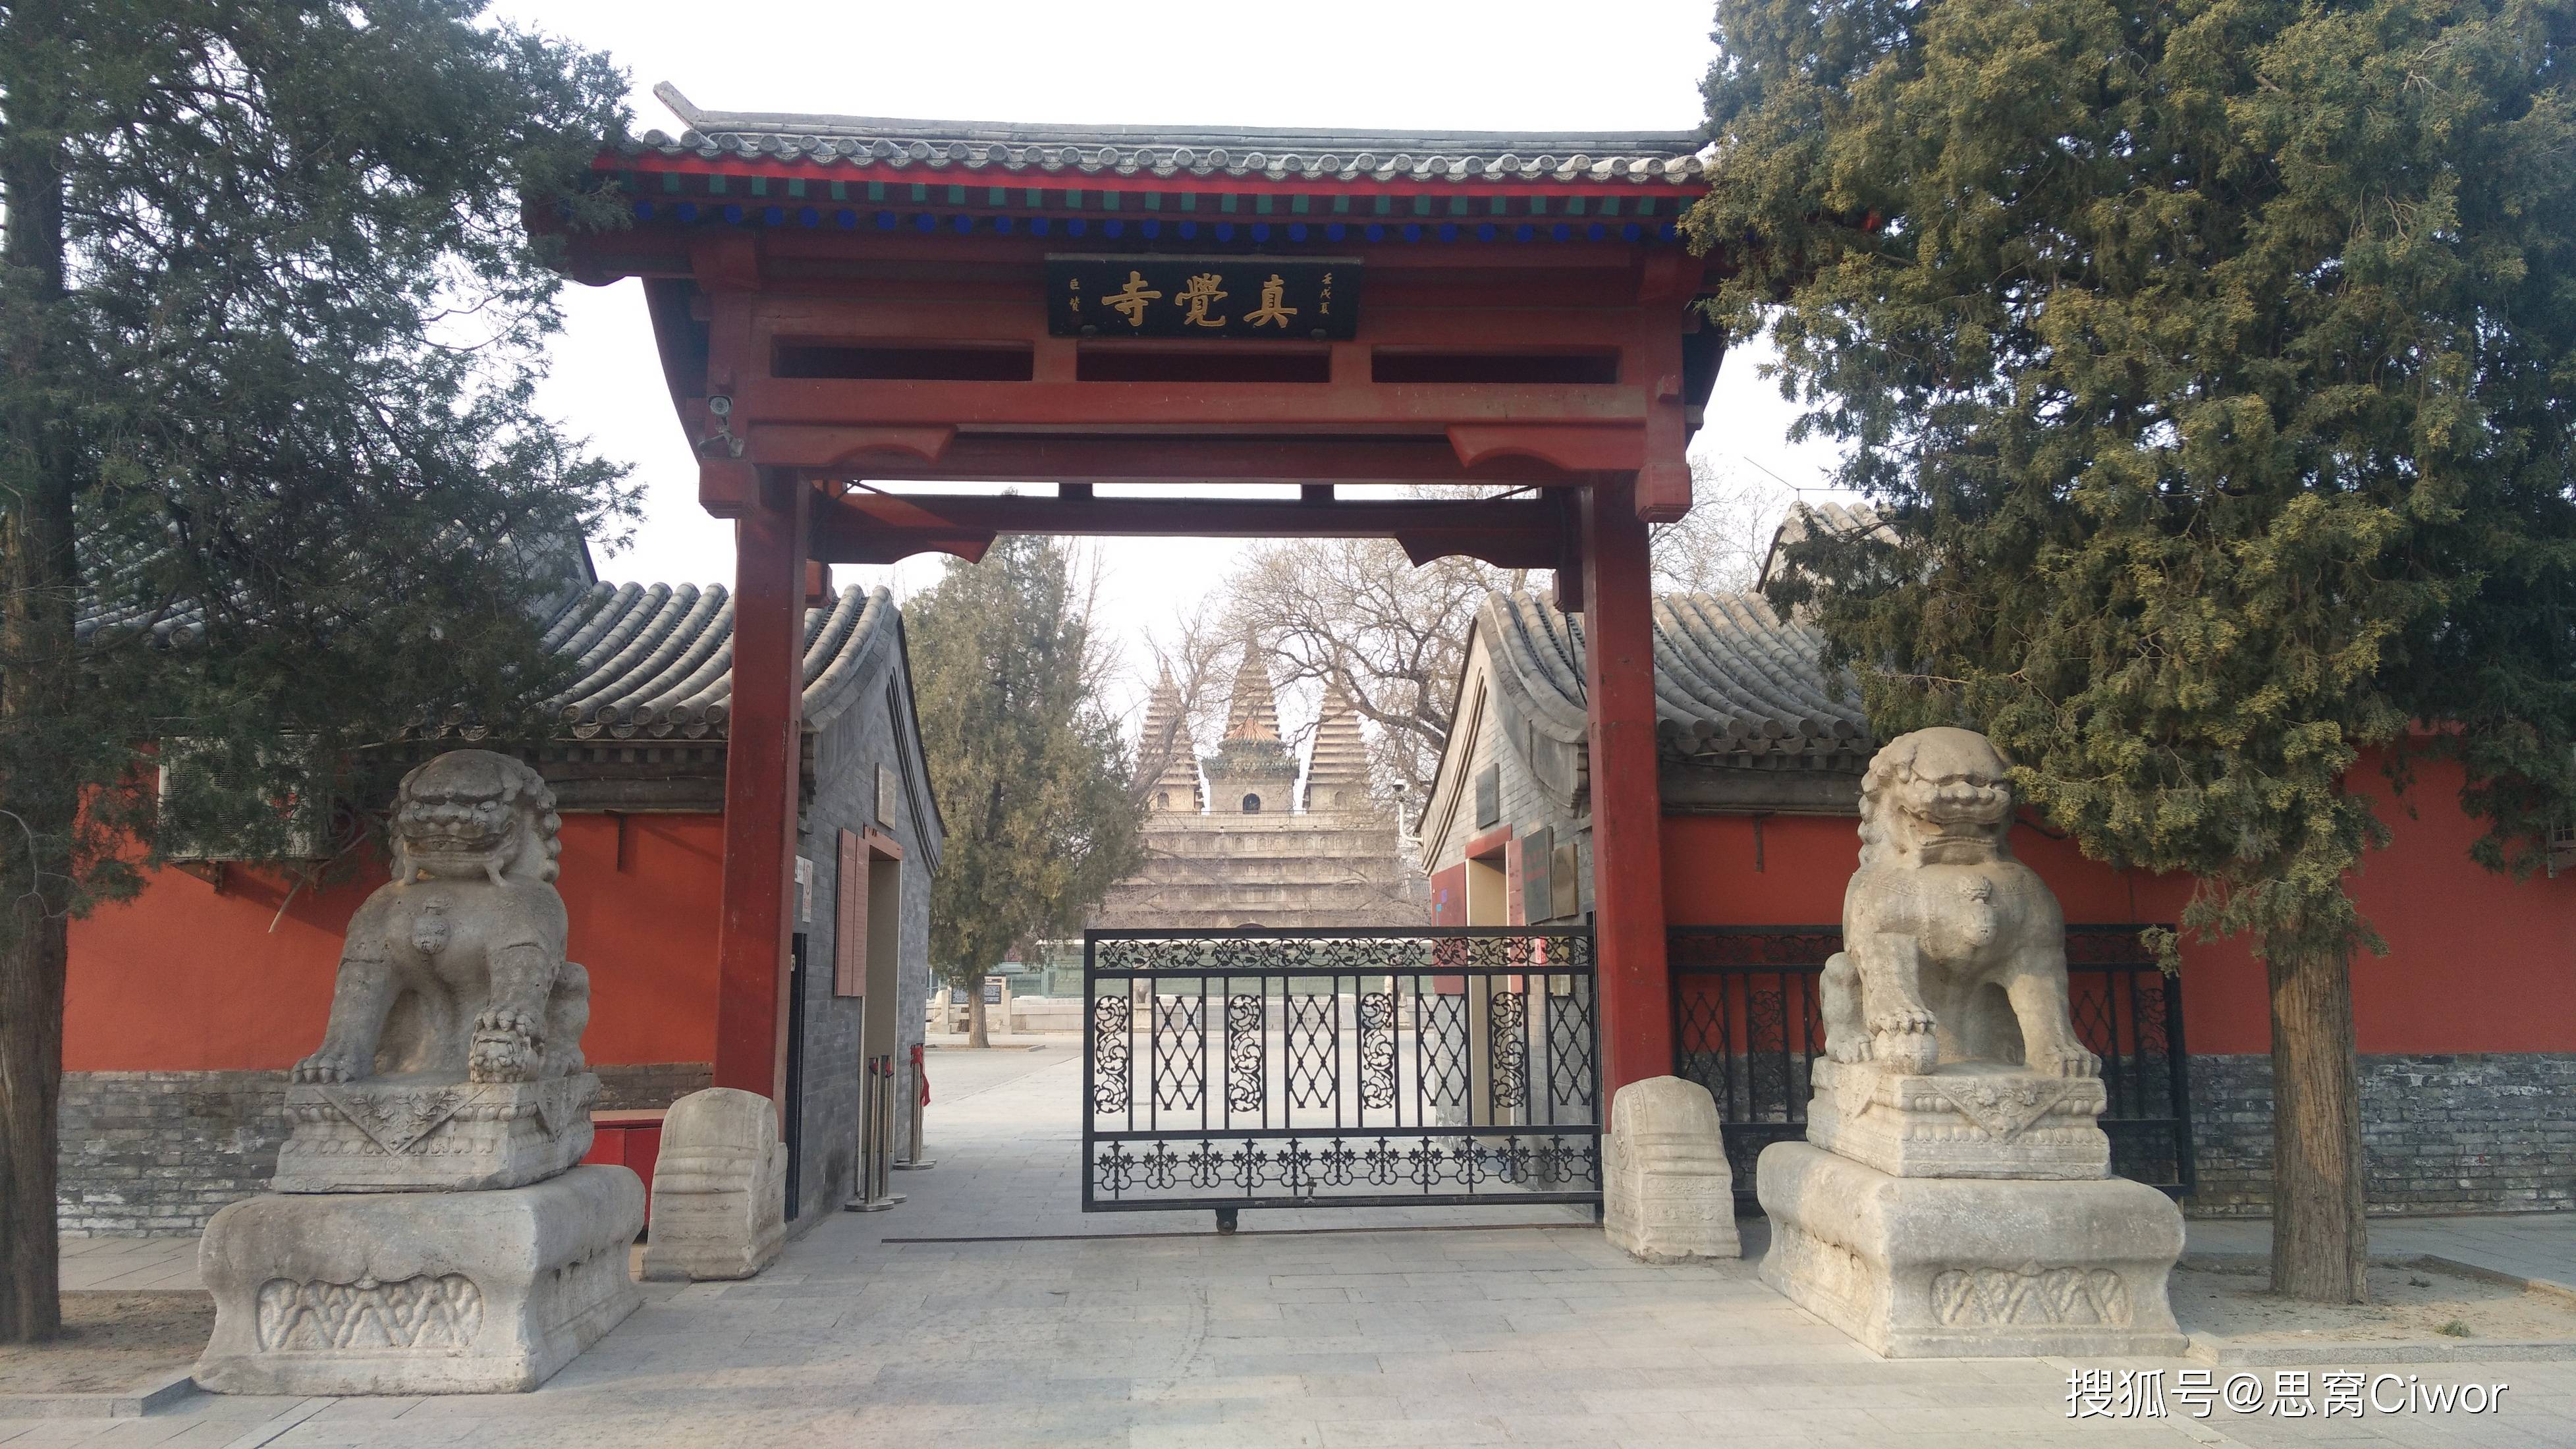 思窝花脸：五塔寺（真觉寺），感受北京石刻艺术历史文化